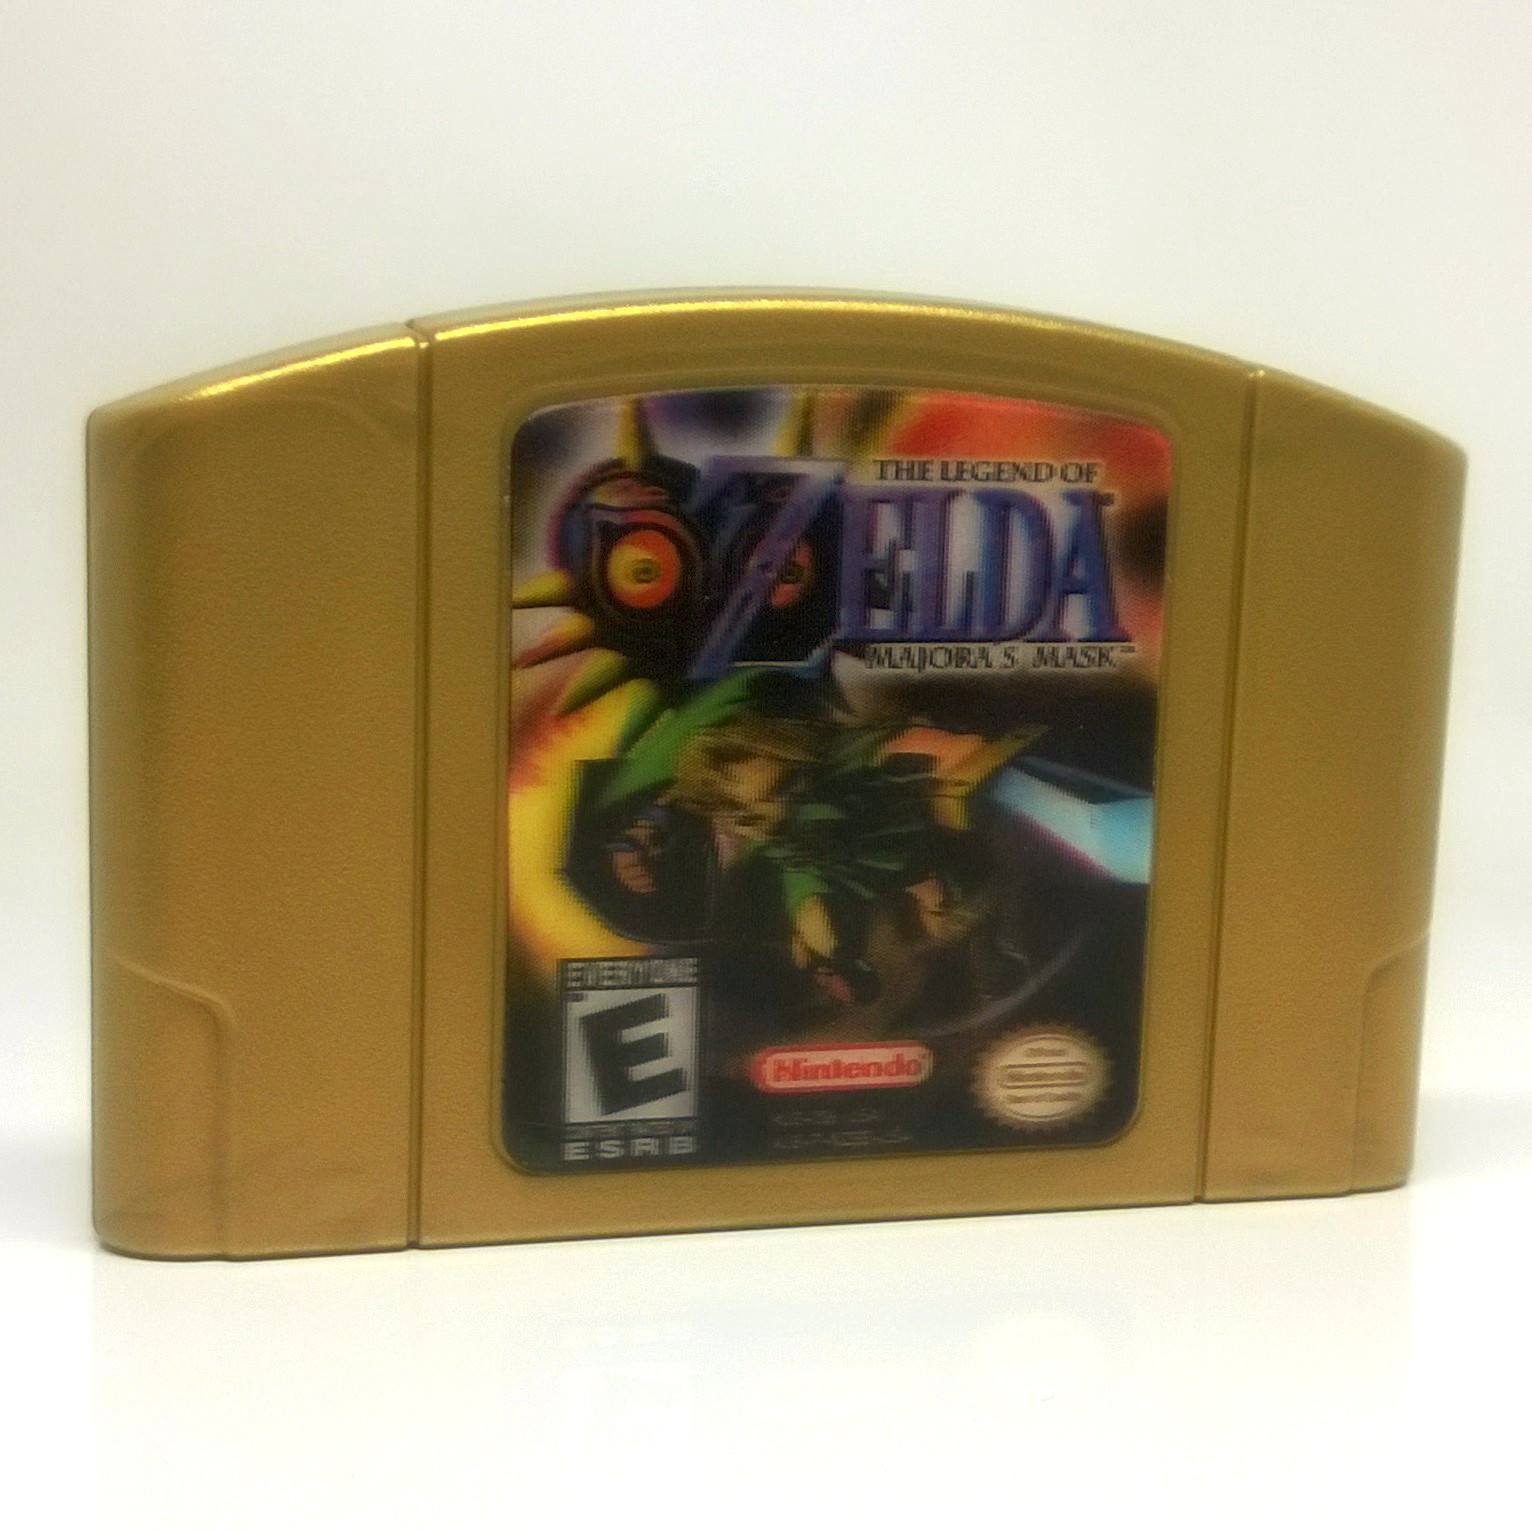 The Legend of Zelda: Majora's Mask Nintendo 64 N64 Game